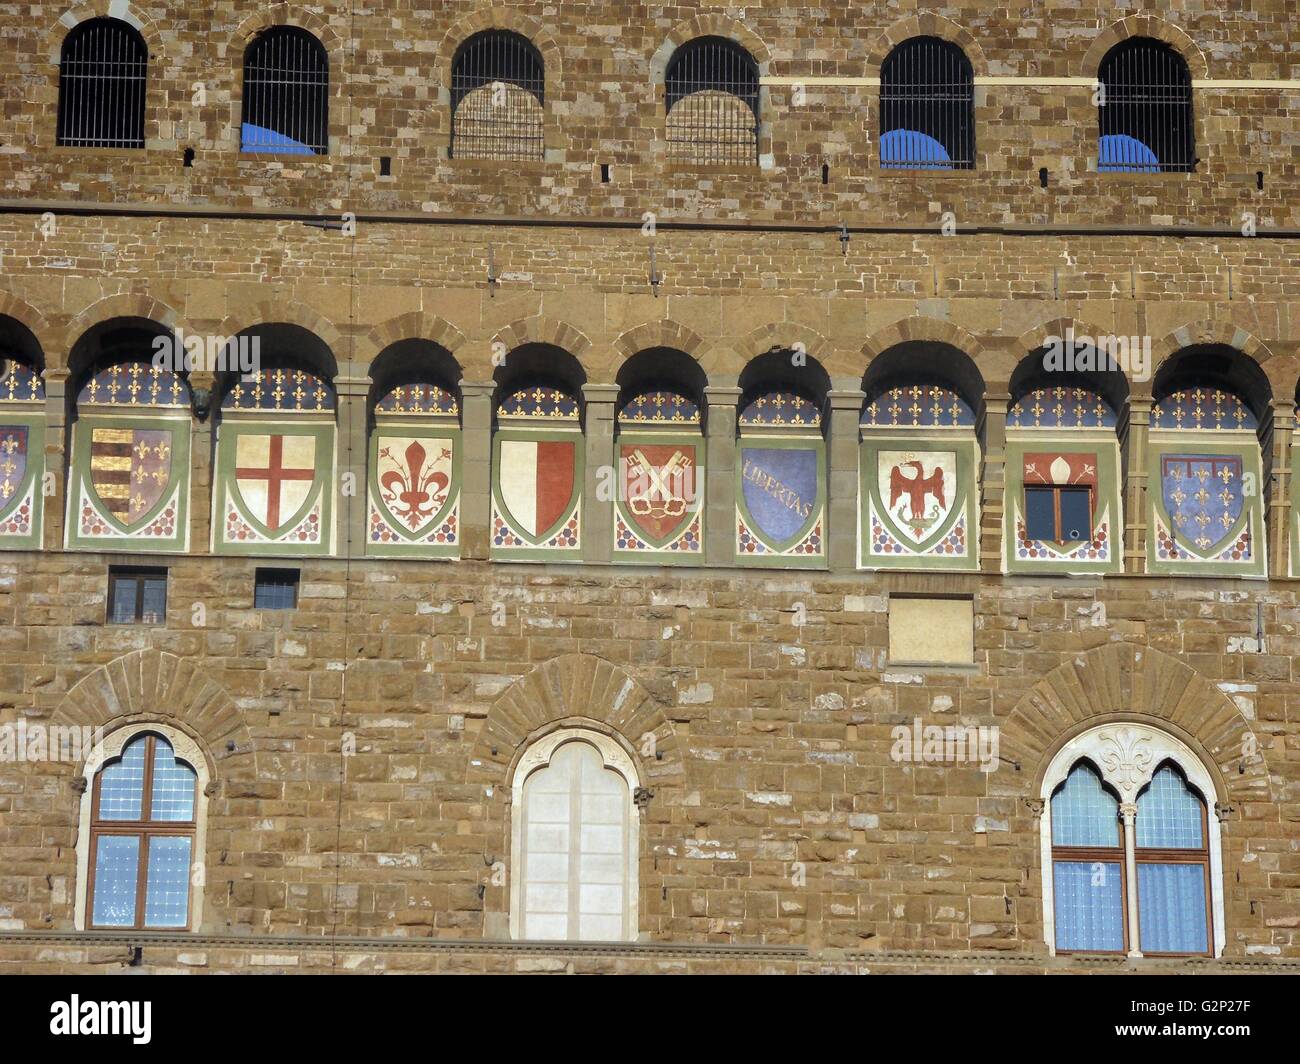 Detail aus dem Palazzo Vecchio. Rathaus von Florenz, Italien. Eine große romanische Festung - Palast mit Blick auf den Piazza della Signoria. Von dem Architekten Arnolfo di Cambio in 1299 konzipiert. Dieses Bild zeigt die Bögen in der Struktur, die mit den 9 Wappen der Florentinischen Republik eingerichtet sind. Stockfoto